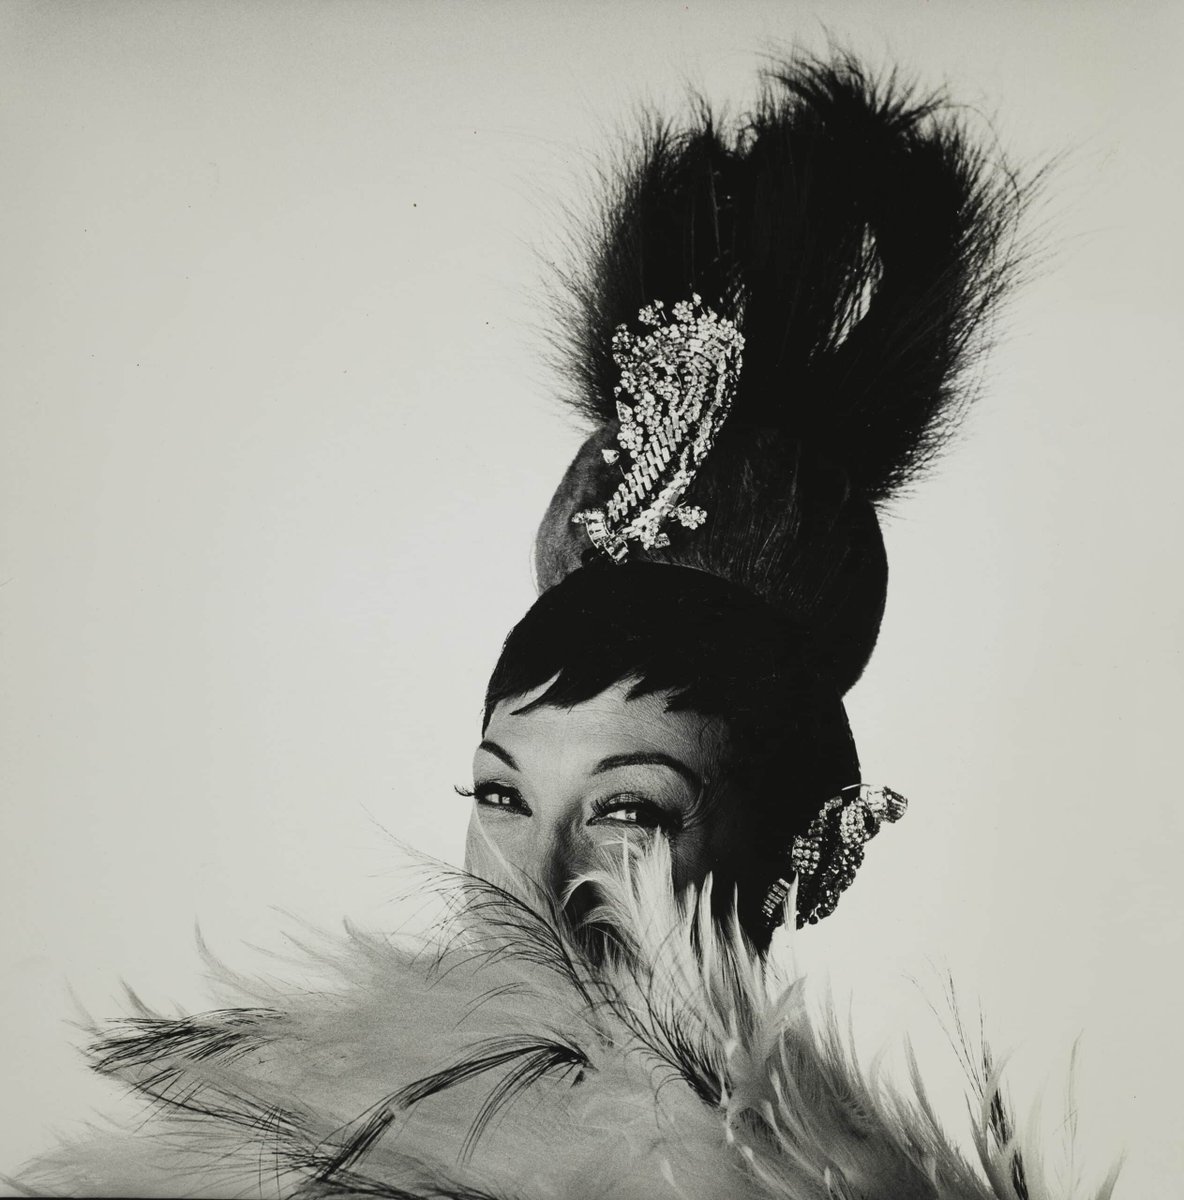 Josephine Baker 1964, image Irving Penn. #josephinebaker #irvingpenn